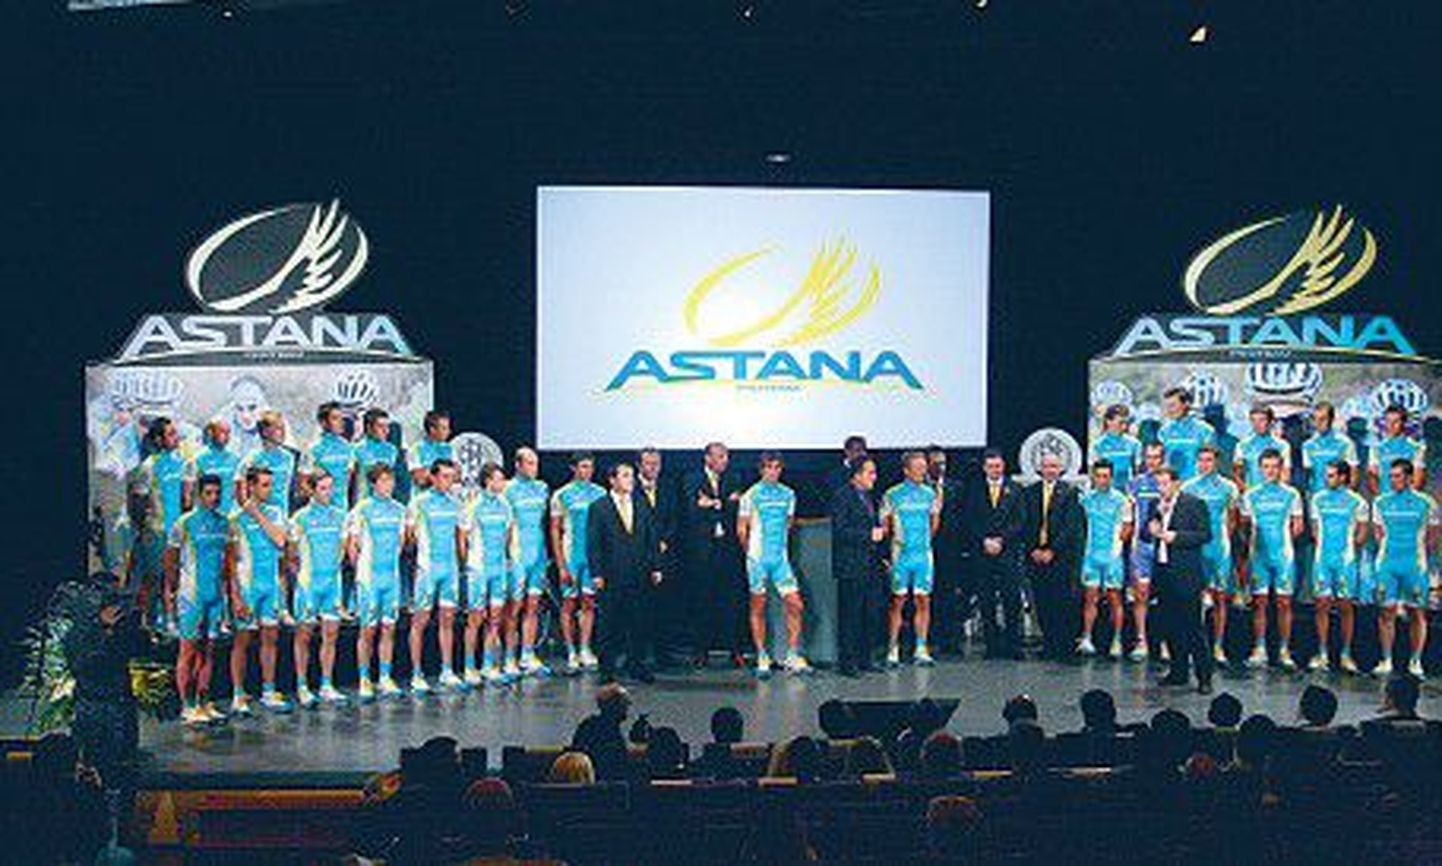 На презентацию команды «Астана» прибыло несколько сотен приглашенных гостей.